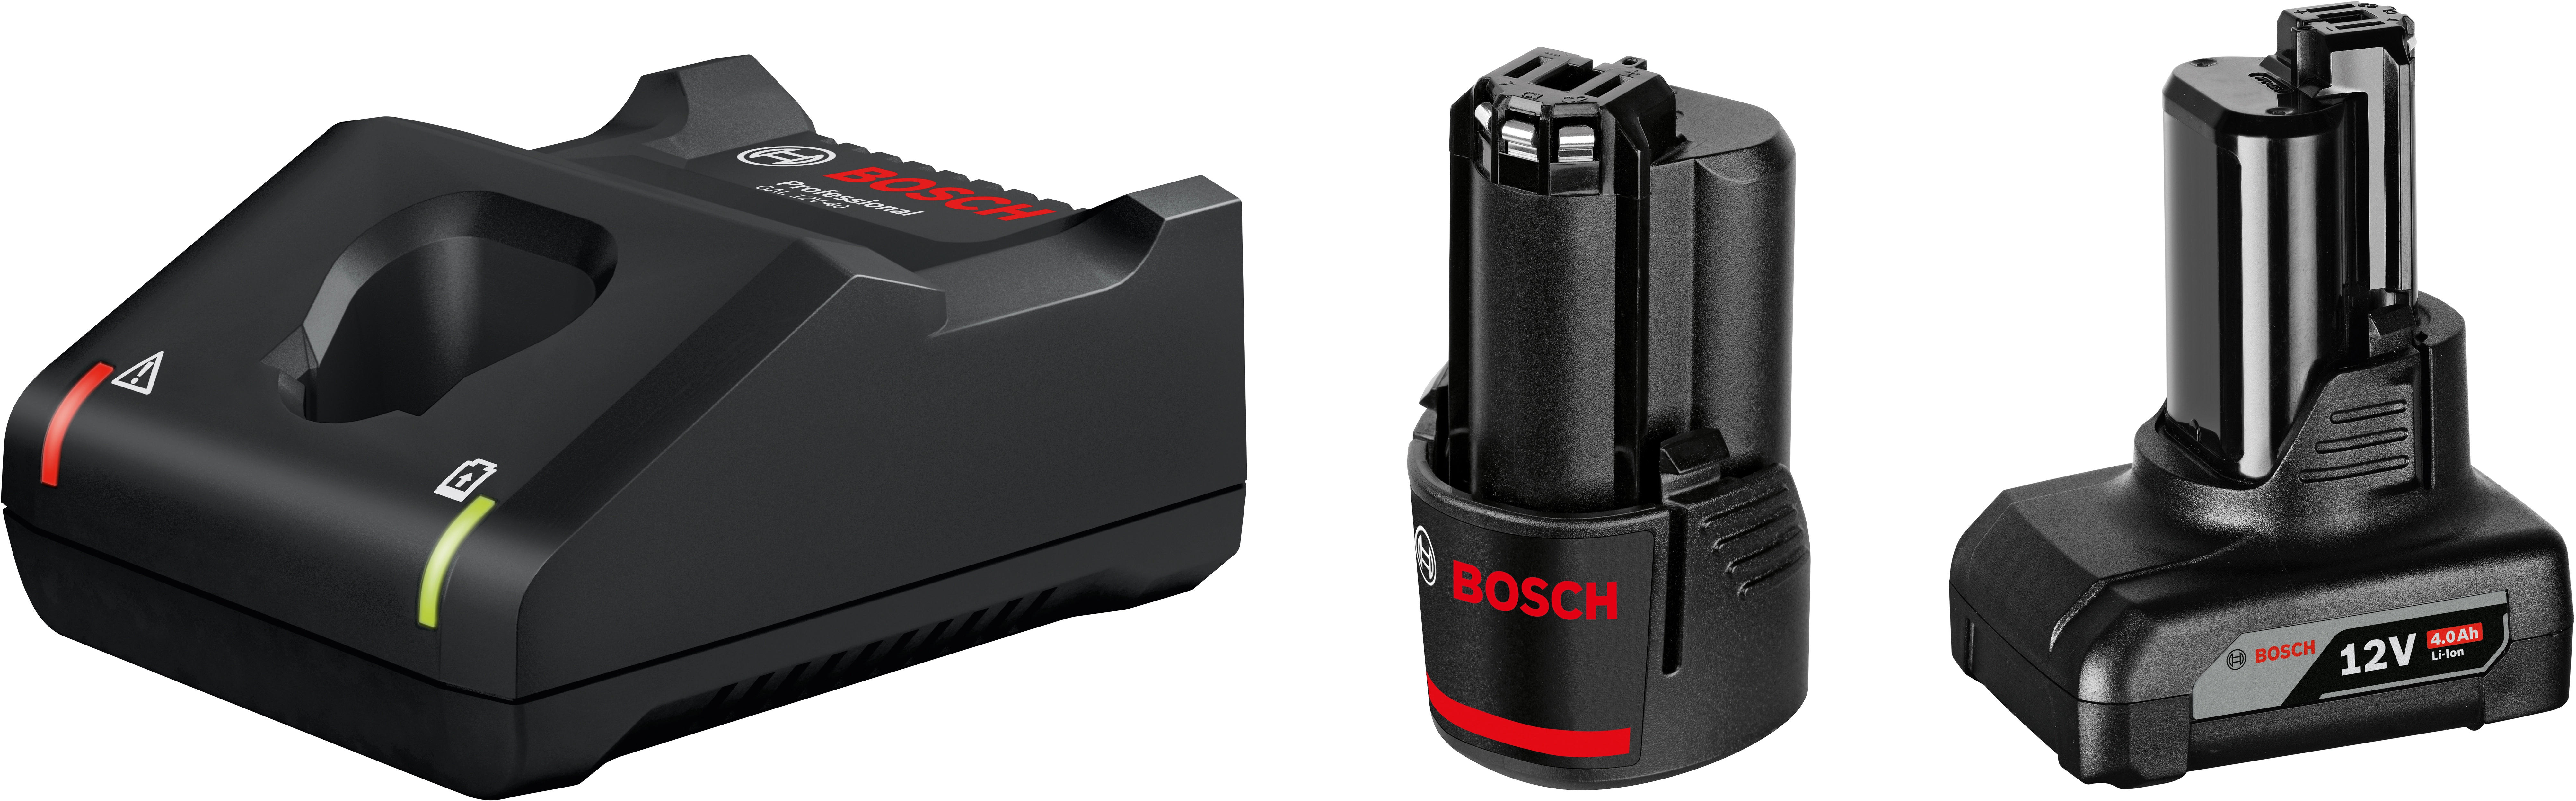 Bosch Professional Akku-Starterset mit 2 bei GAL und Ladegerät OBI kaufen Akkus